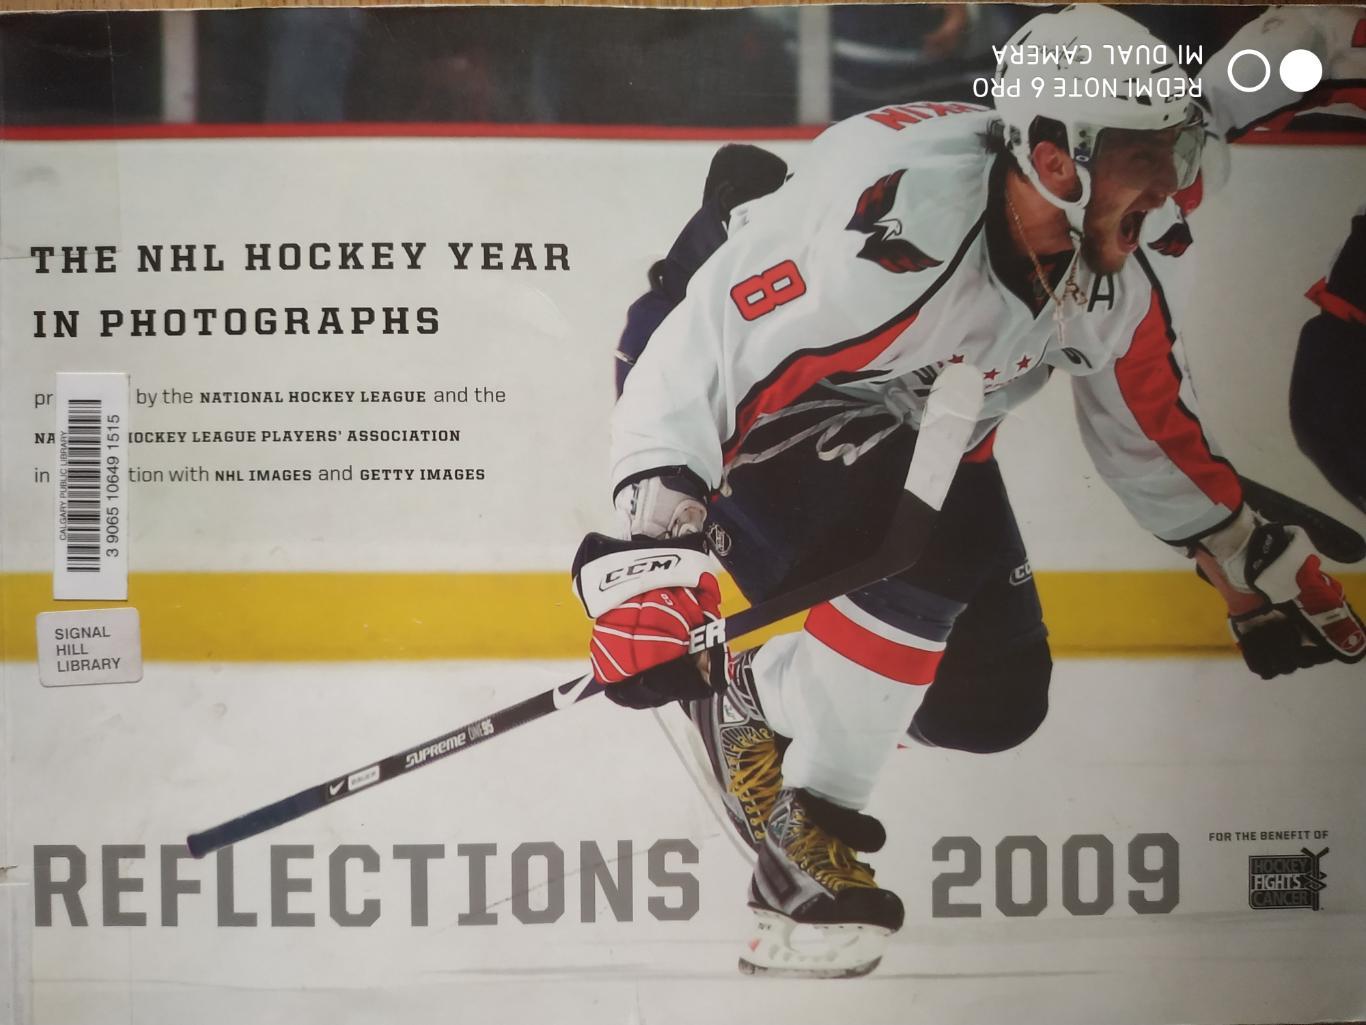 ХОККЕЙ ПРОГРАММА АЛЬБОМ НХЛ THE NHL HOCKEY YEAR IN PHOTOGRAPHS REFLECTIONS 2009